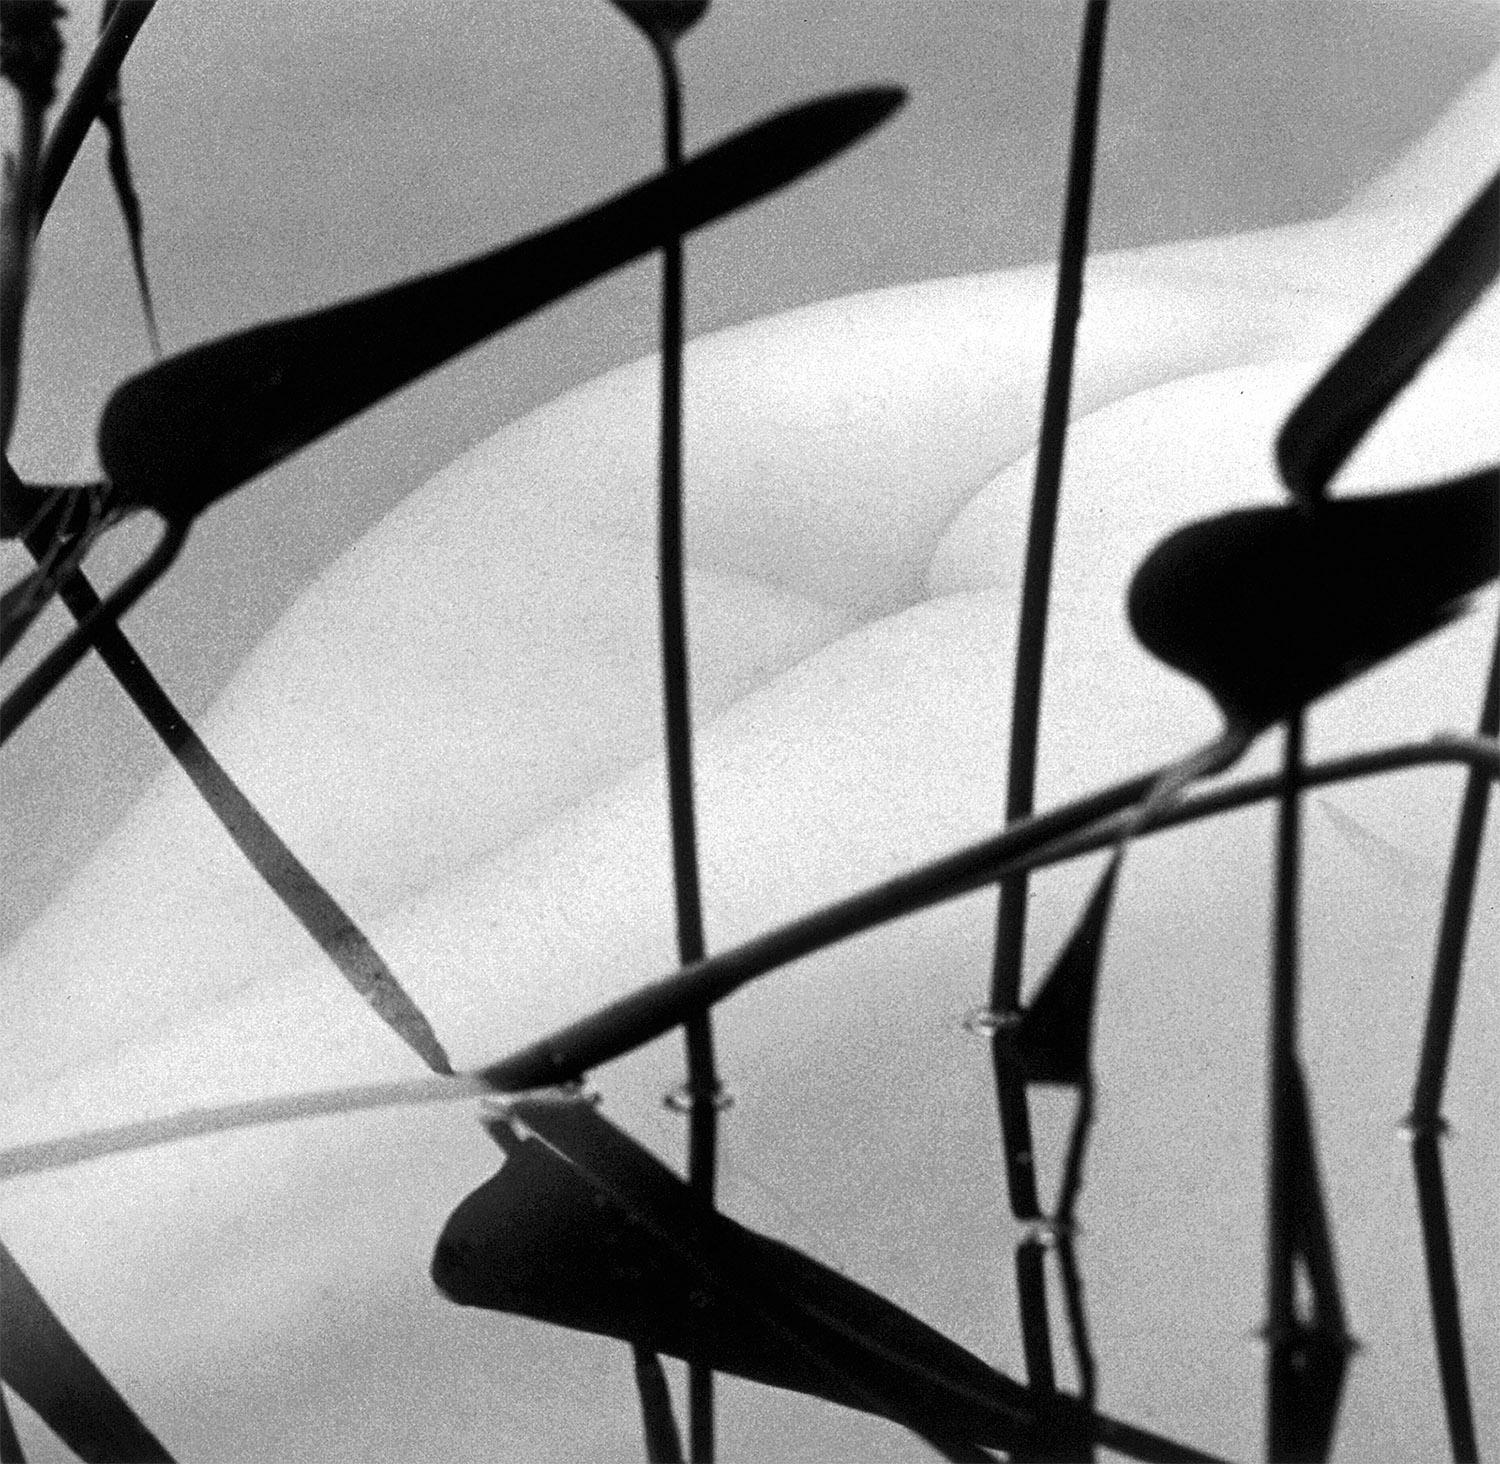 Karin Rosenthal Nude Photograph – Nackt unter Wasser